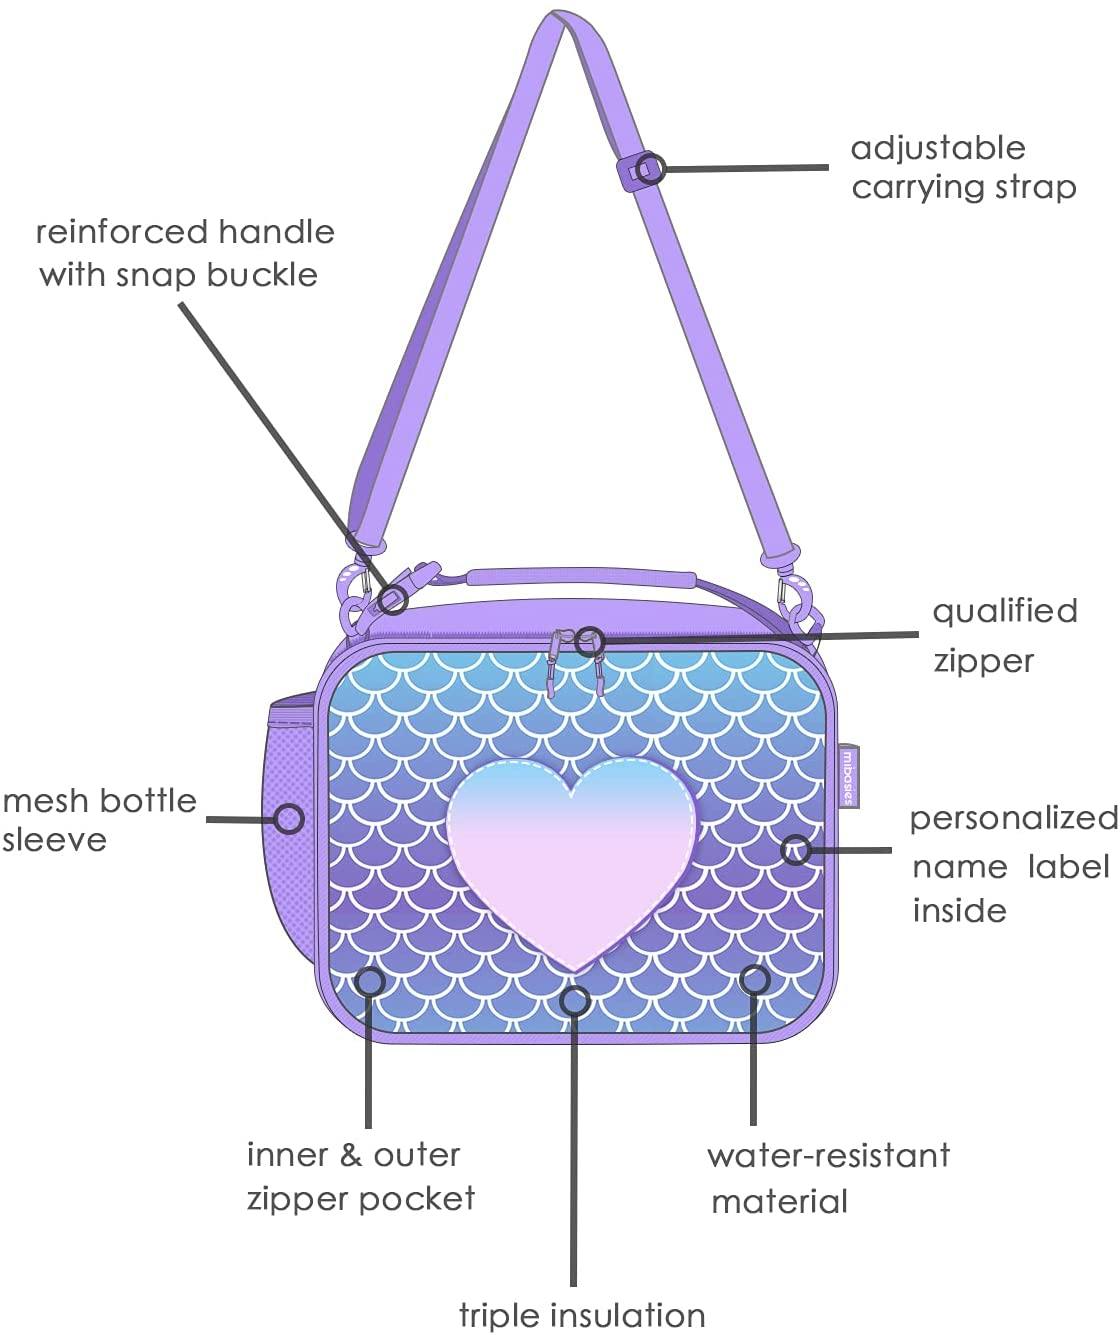 Love you Mermaid Lunch Bag – mibasies